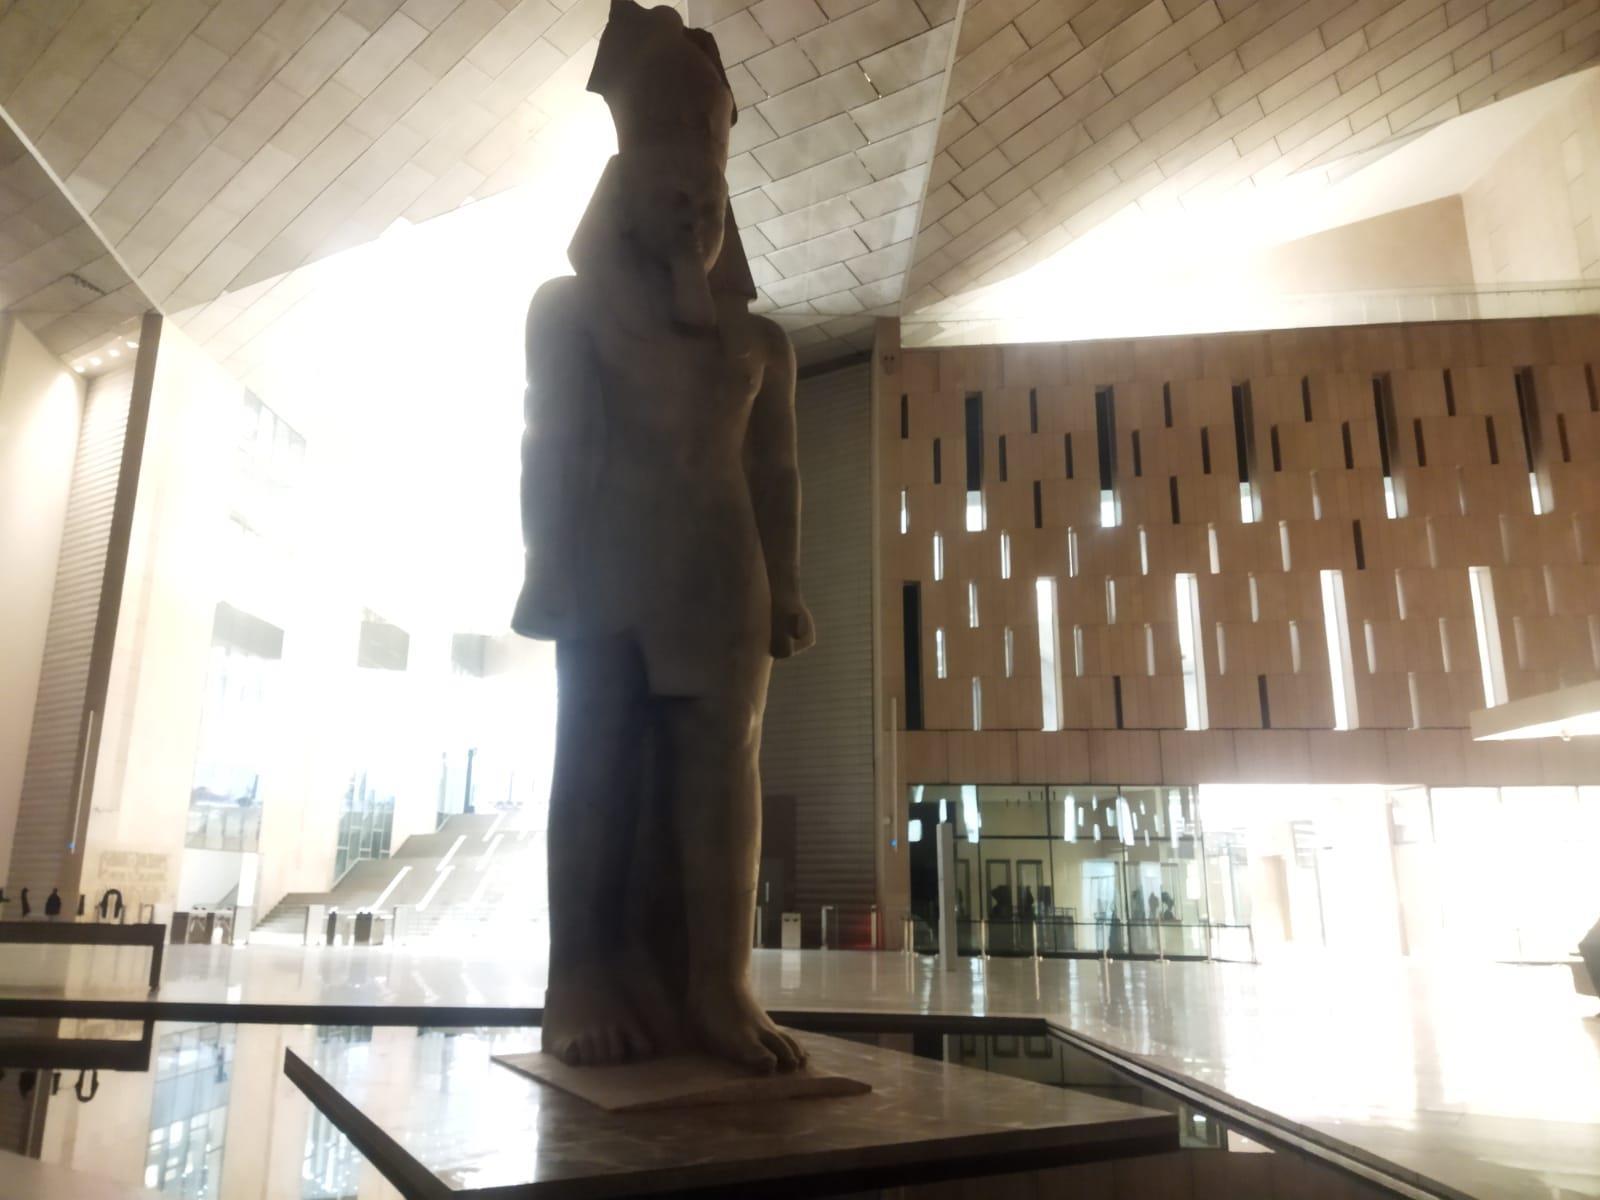  تمثال الملك رمسيس الثاني بالمتحف المصري الكبير